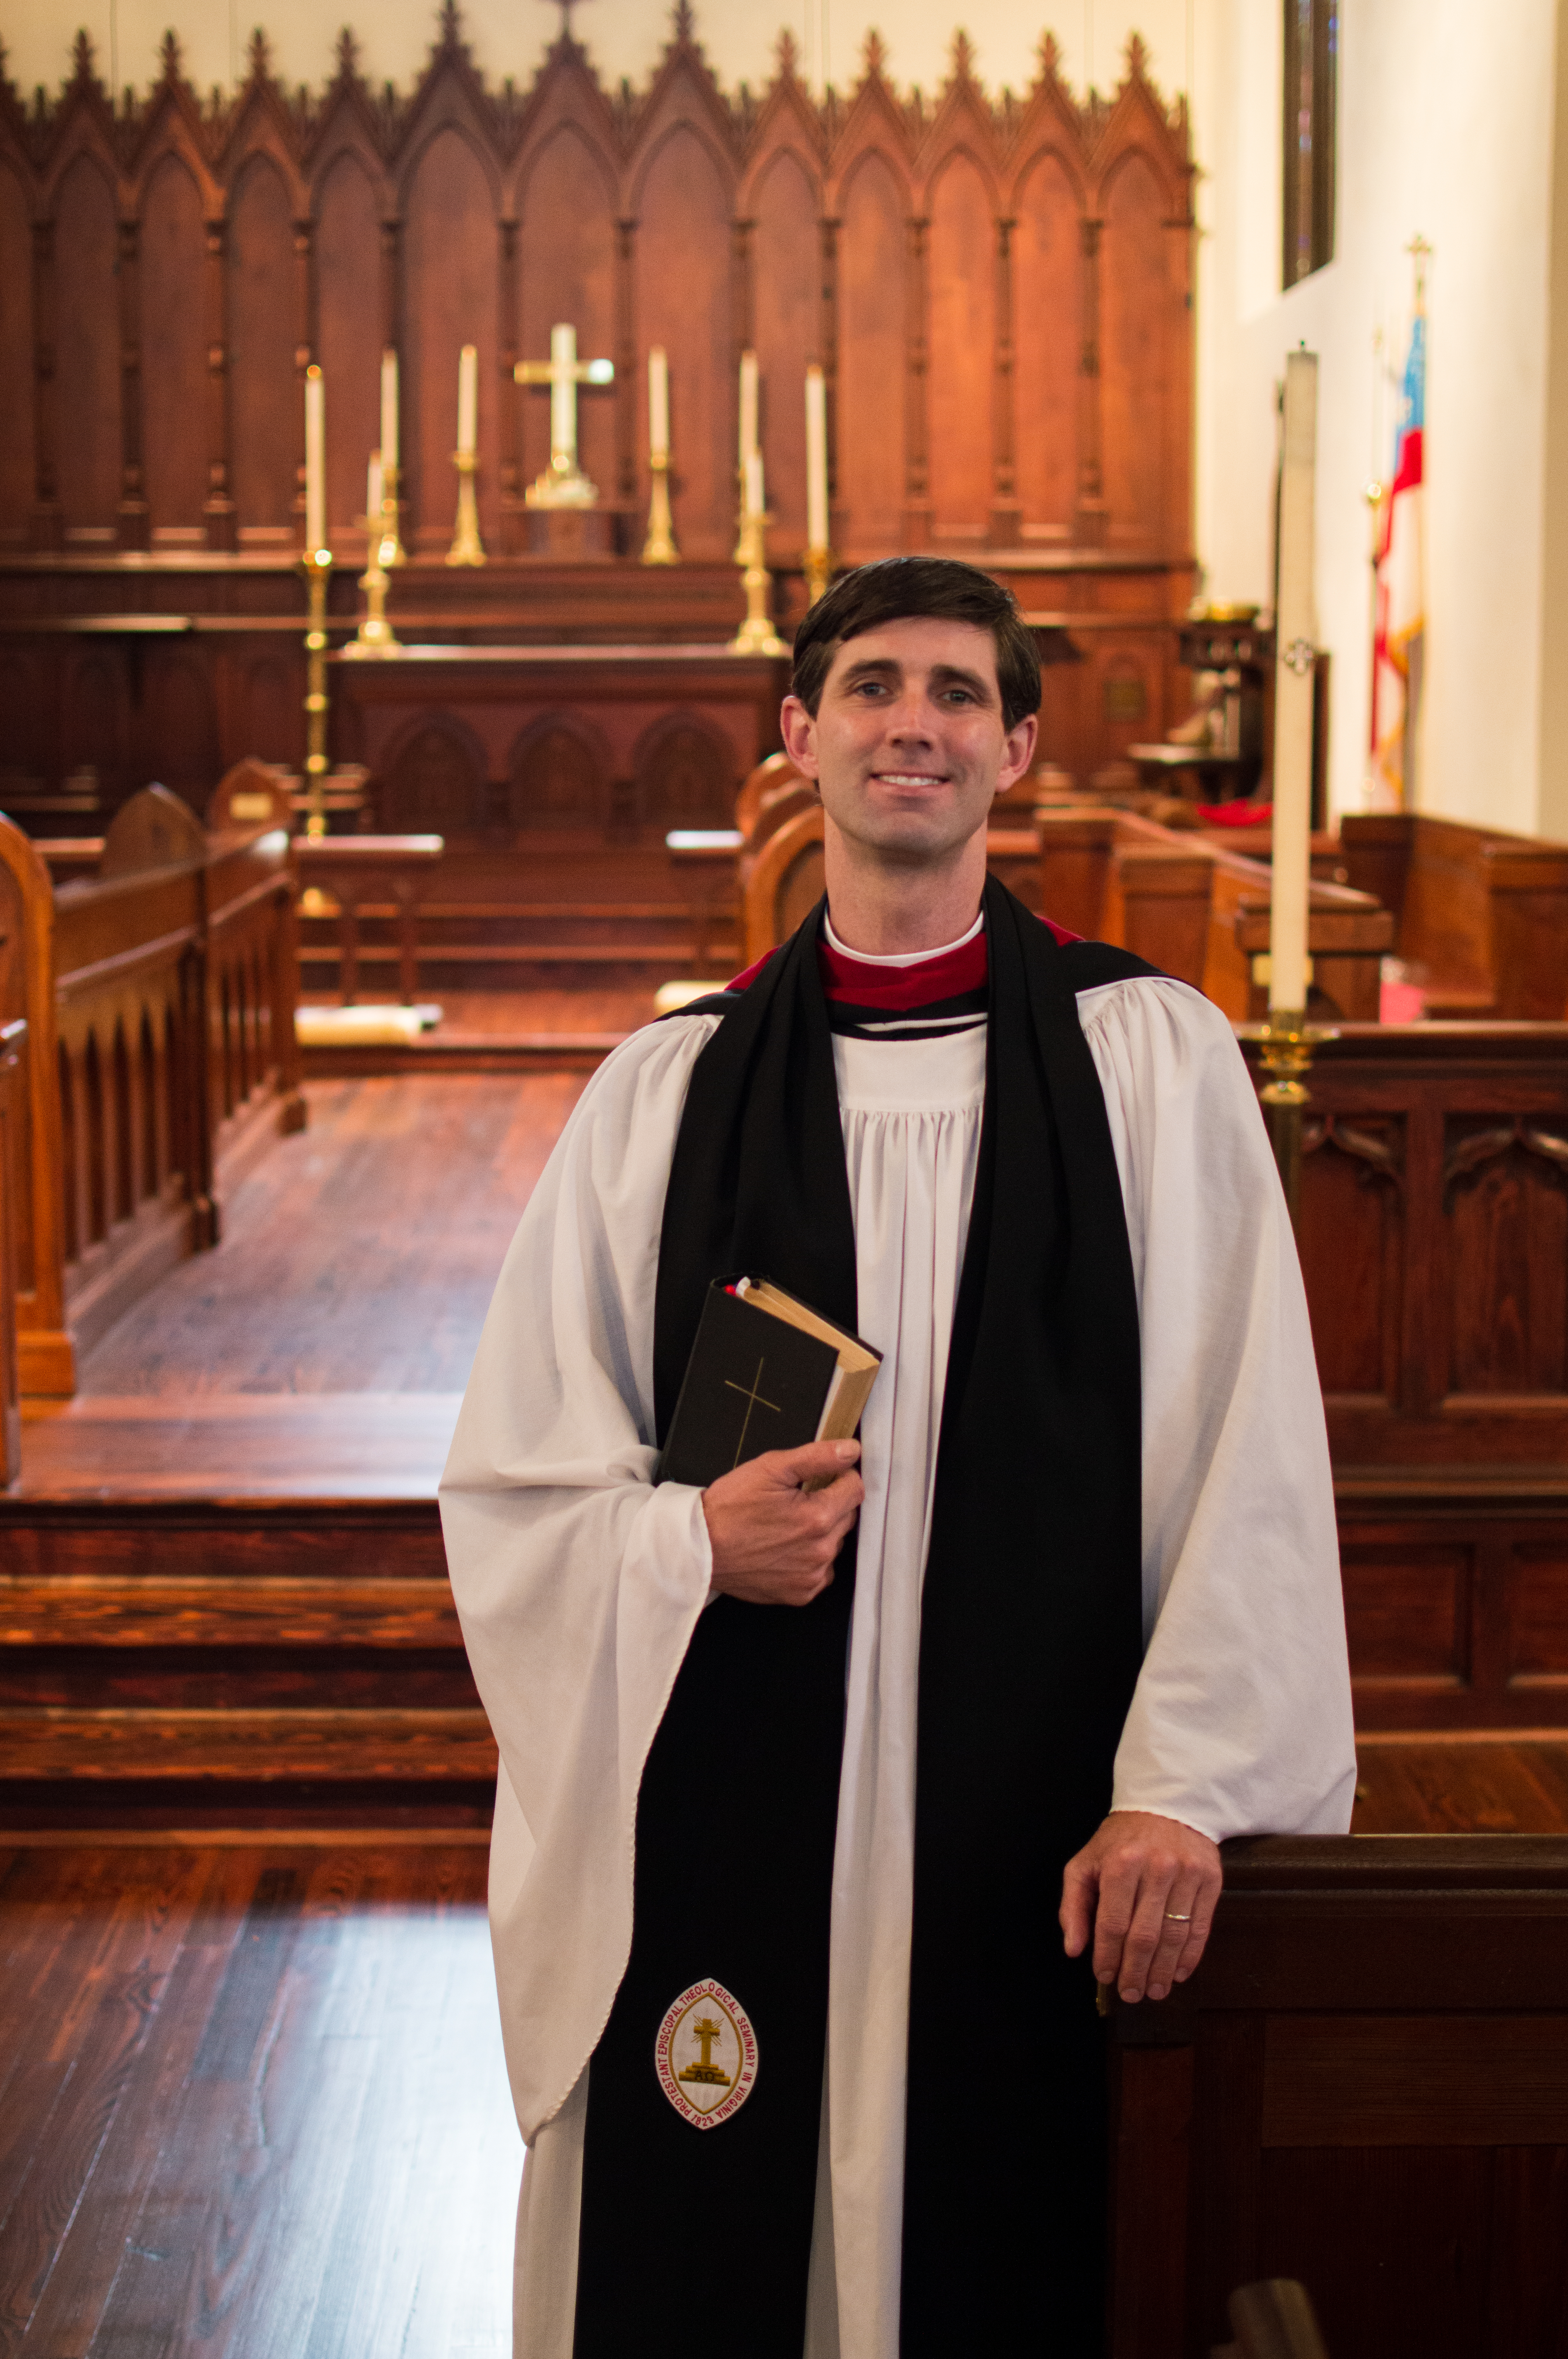 The Rev. Daniel Cenci